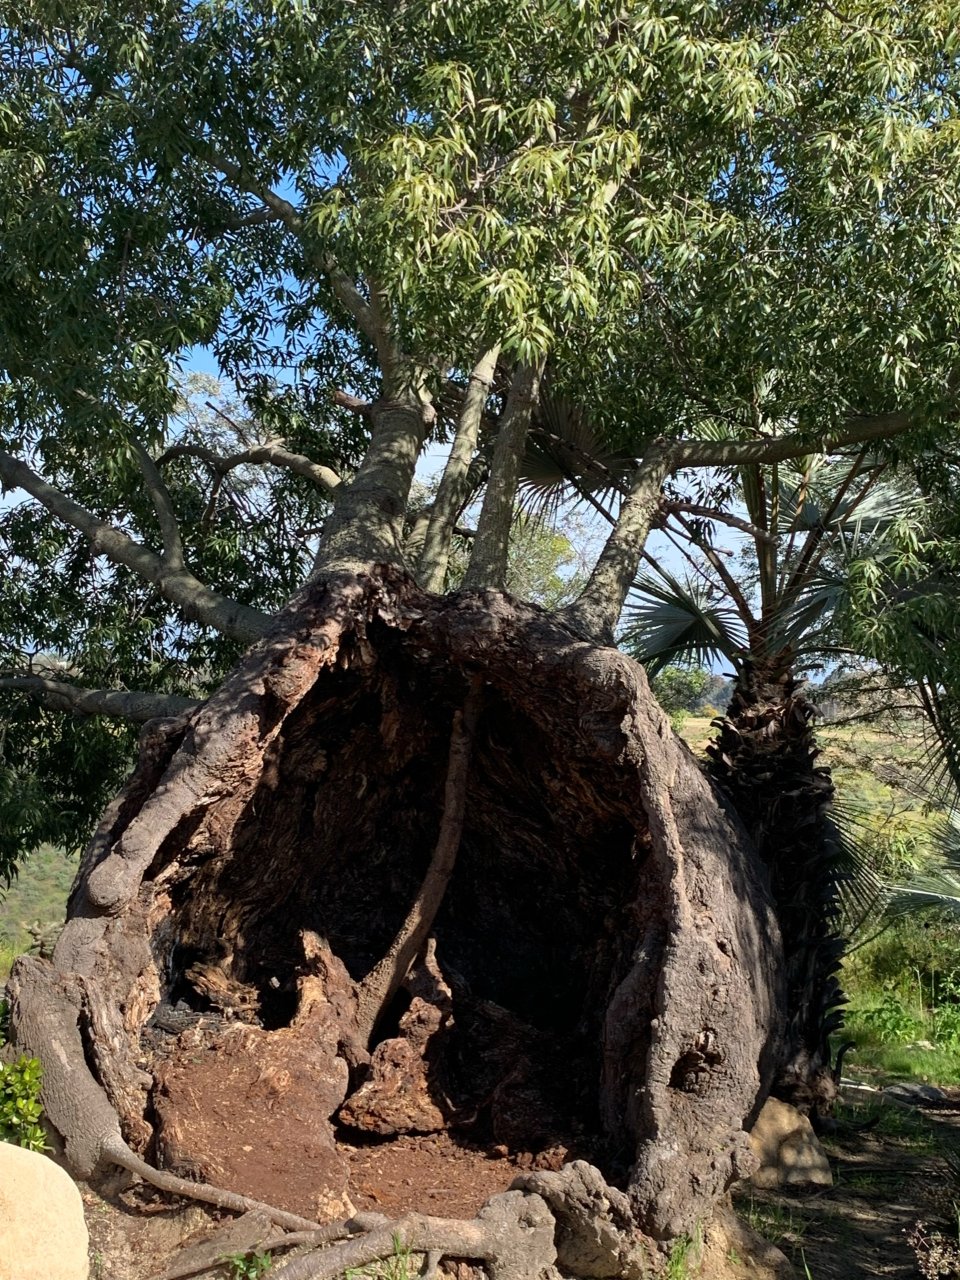 Balboa公园玫瑰园中的空心树...